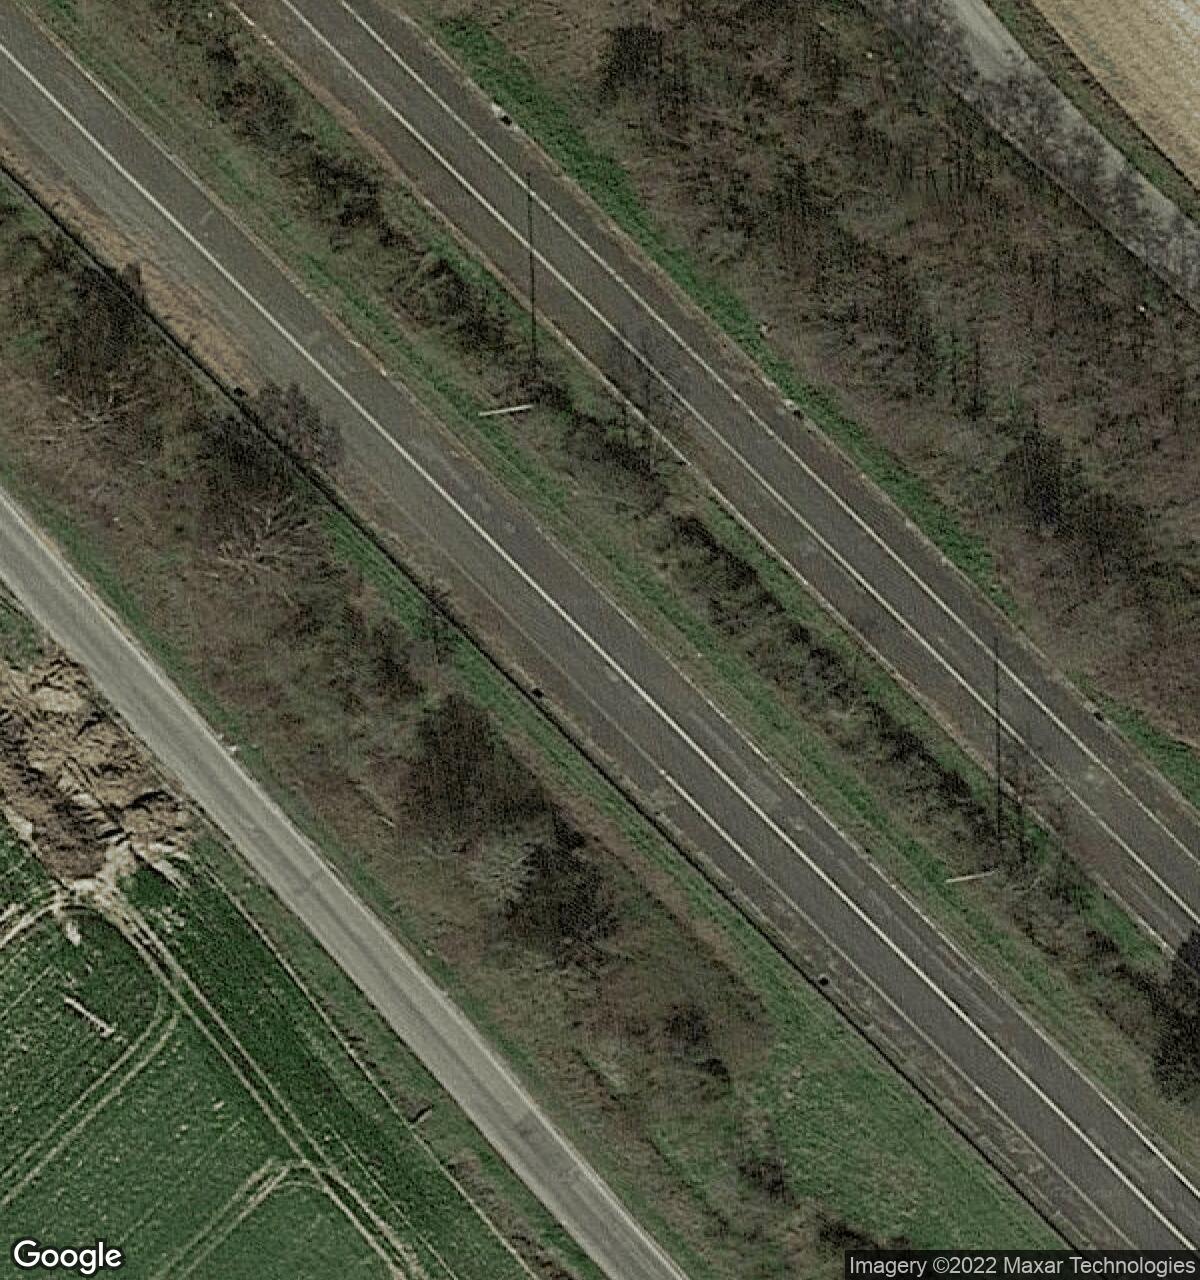 Abandoned Highway